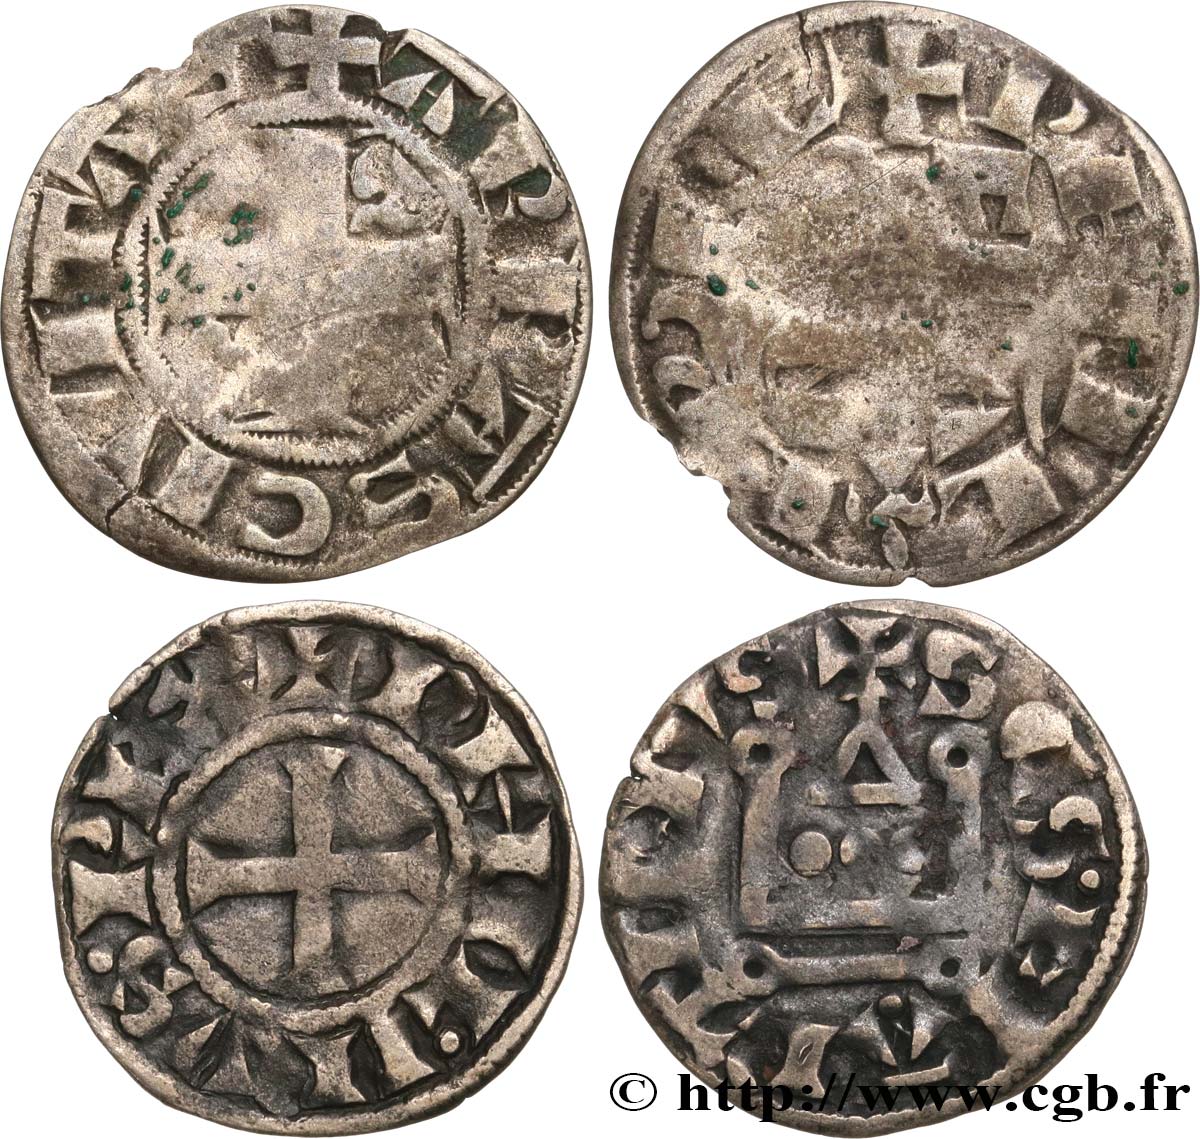 PHILIPP II  AUGUSTUS  Lot de deux monnaies royales n.d. Ateliers divers S